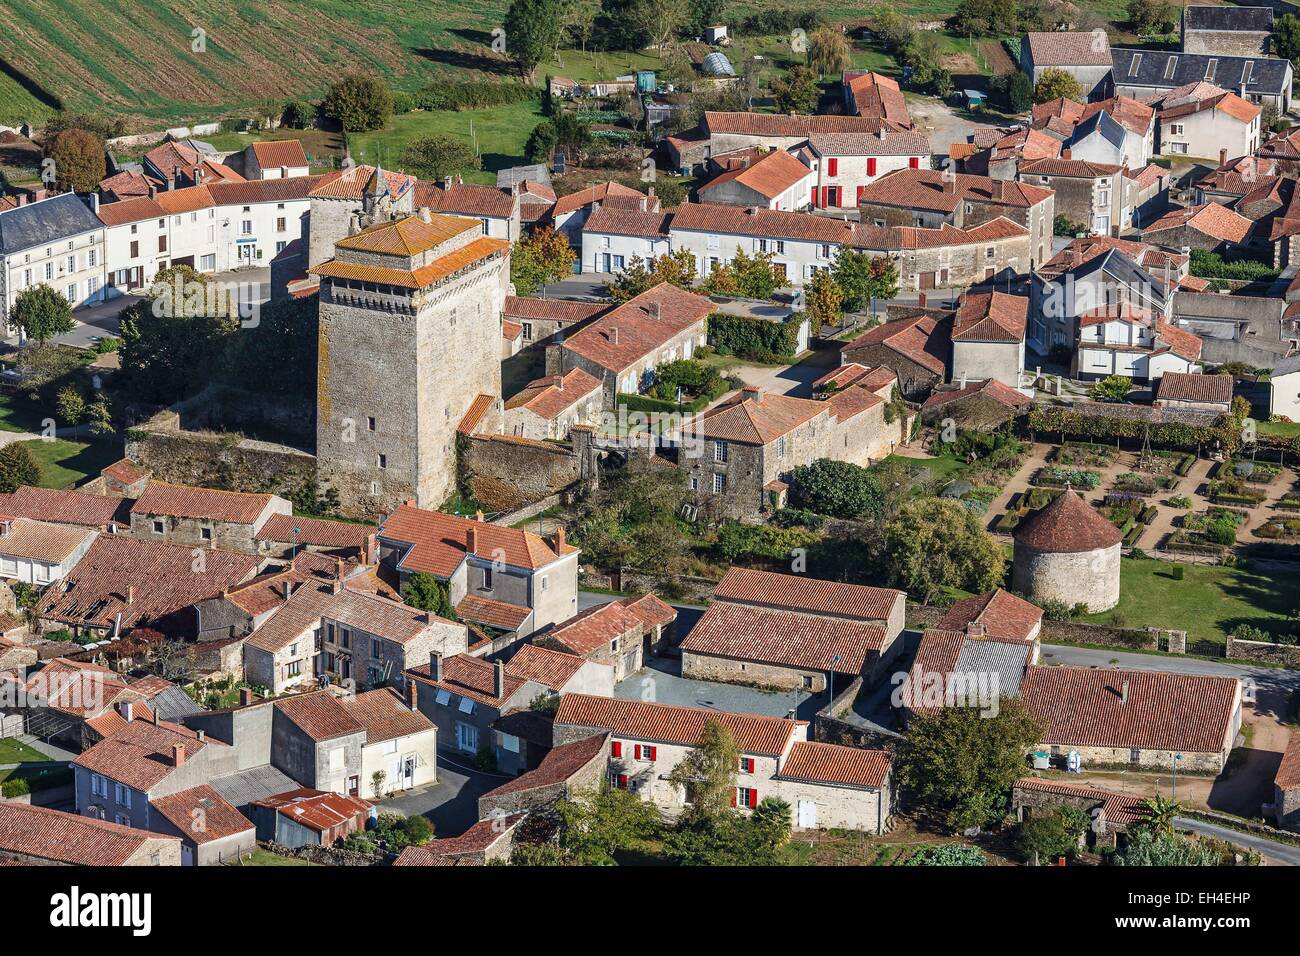 Francia, Vendee, Bazoges en Pareds, il mastio e il villaggio (vista aerea) Foto Stock